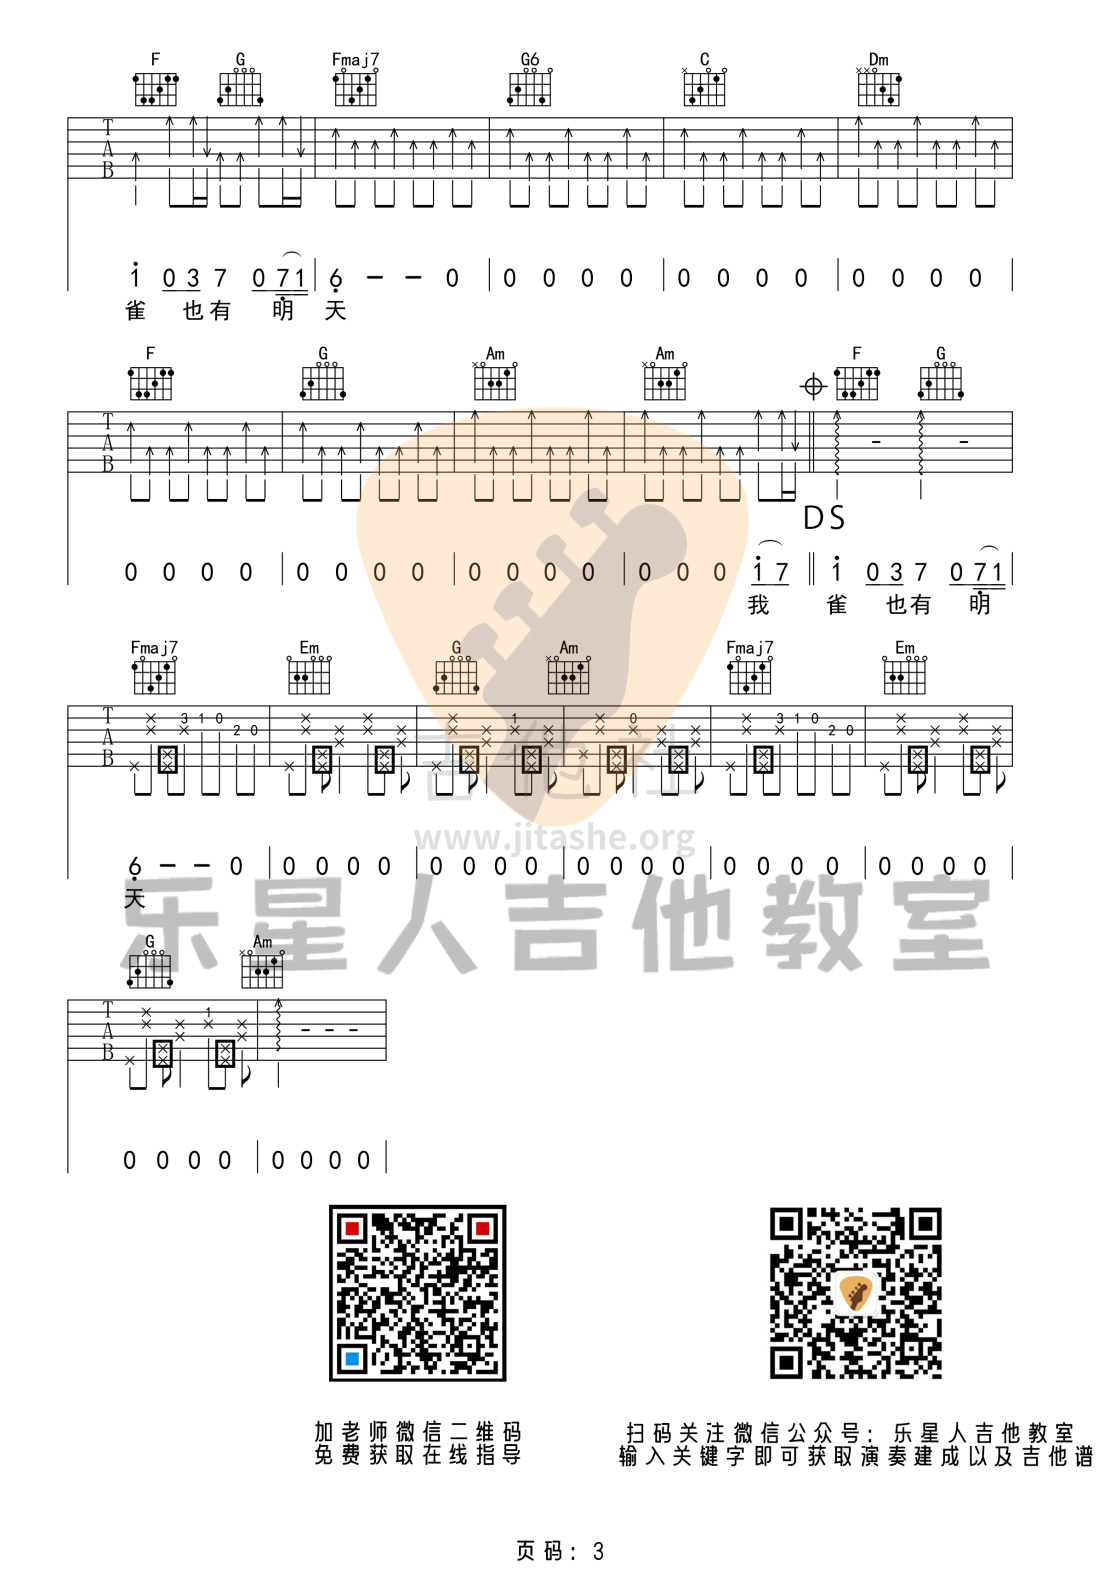 麻雀（完美版吉他谱_乐星人吉他教室编配）吉他谱(图片谱,李荣浩)_李荣浩_3 (1).png